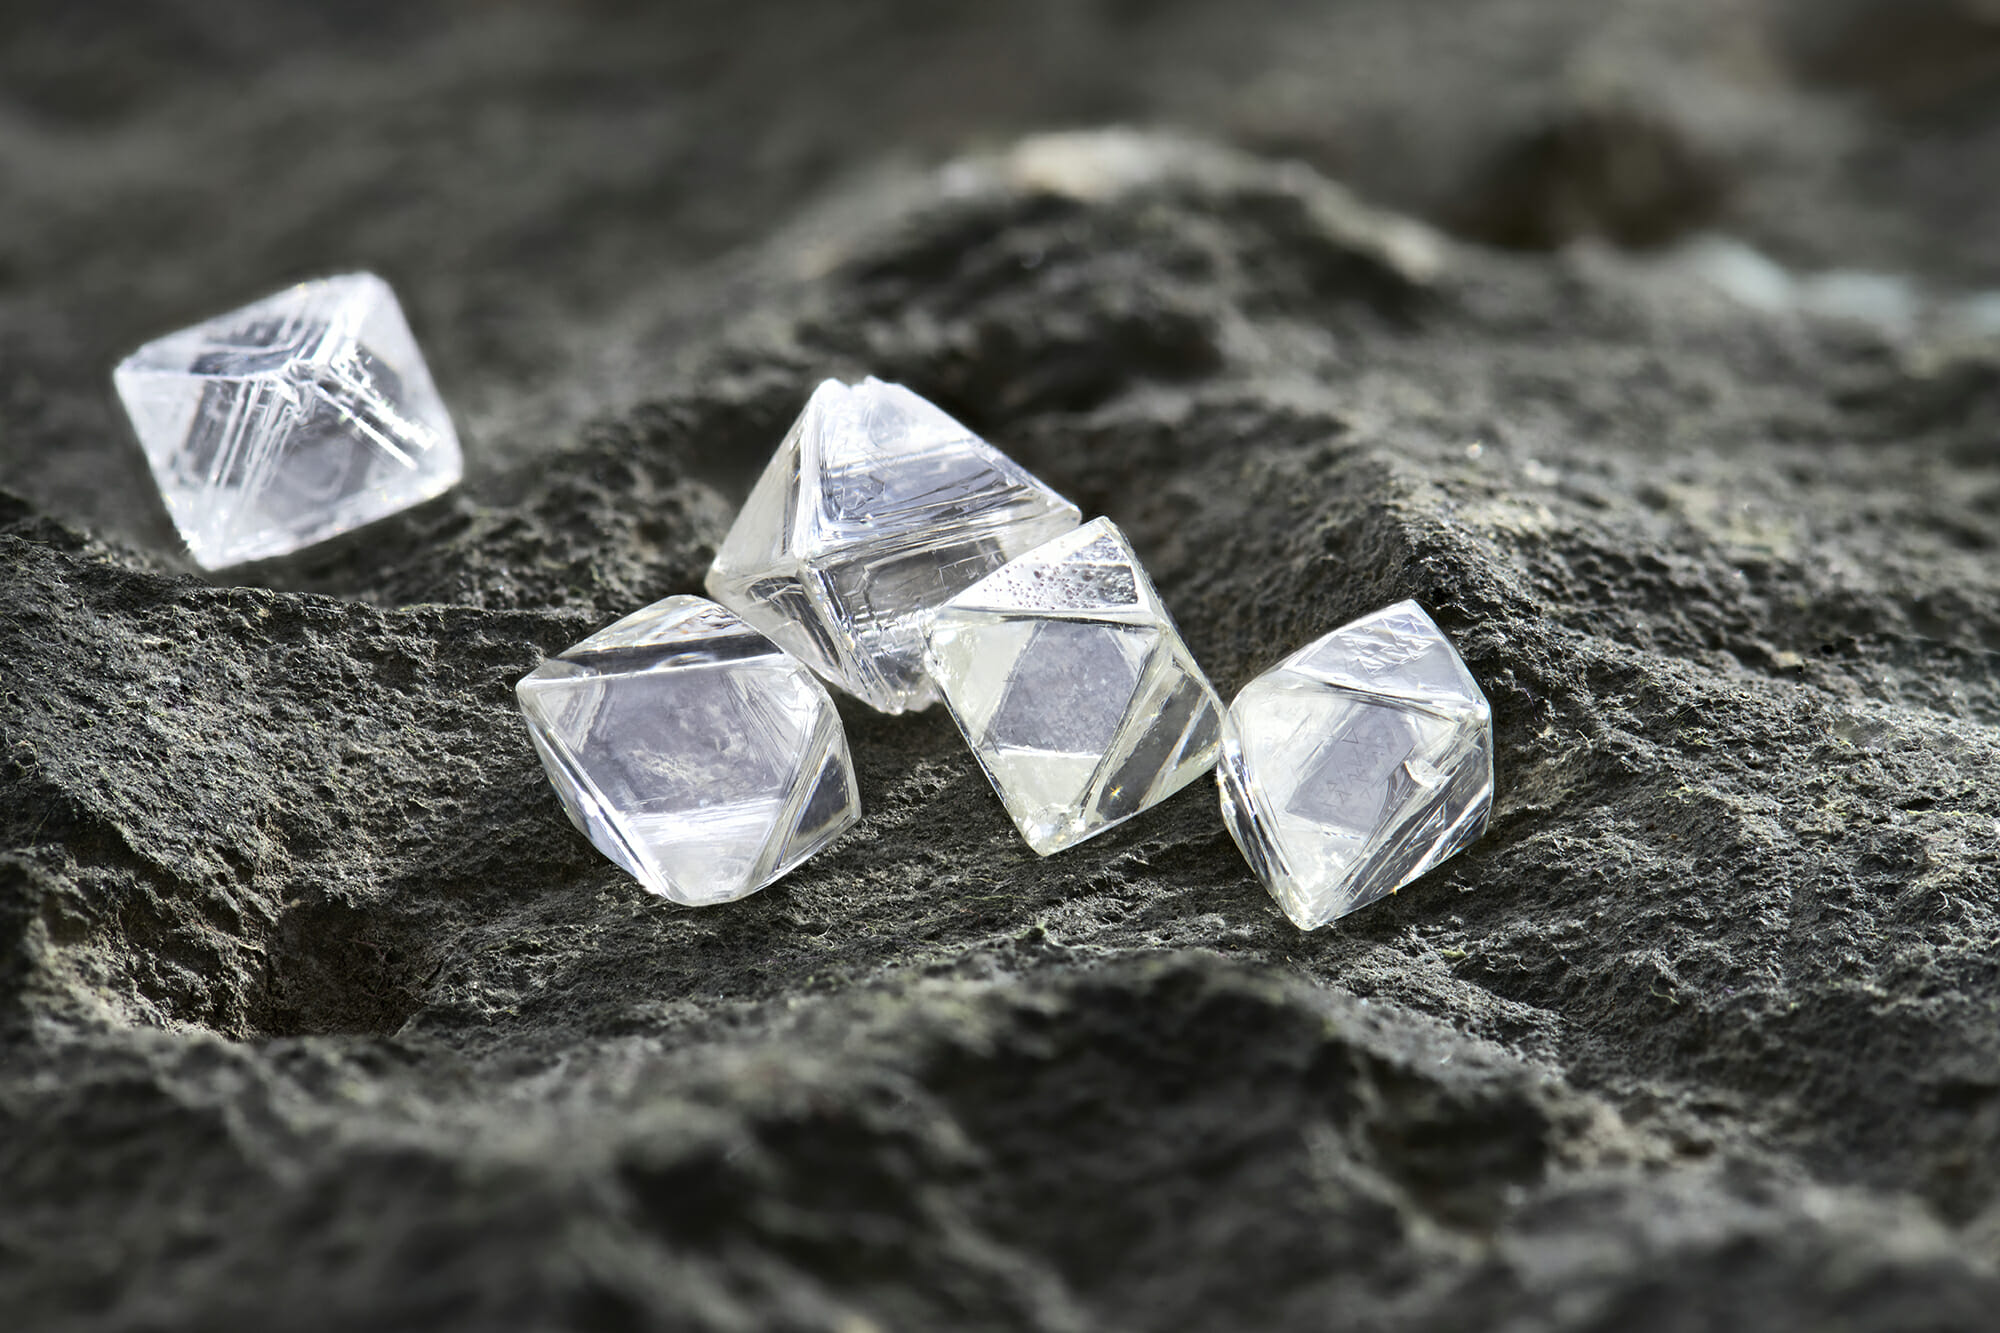 Princess Cut Diamonds Five Octahedron shapes rough diamonds 